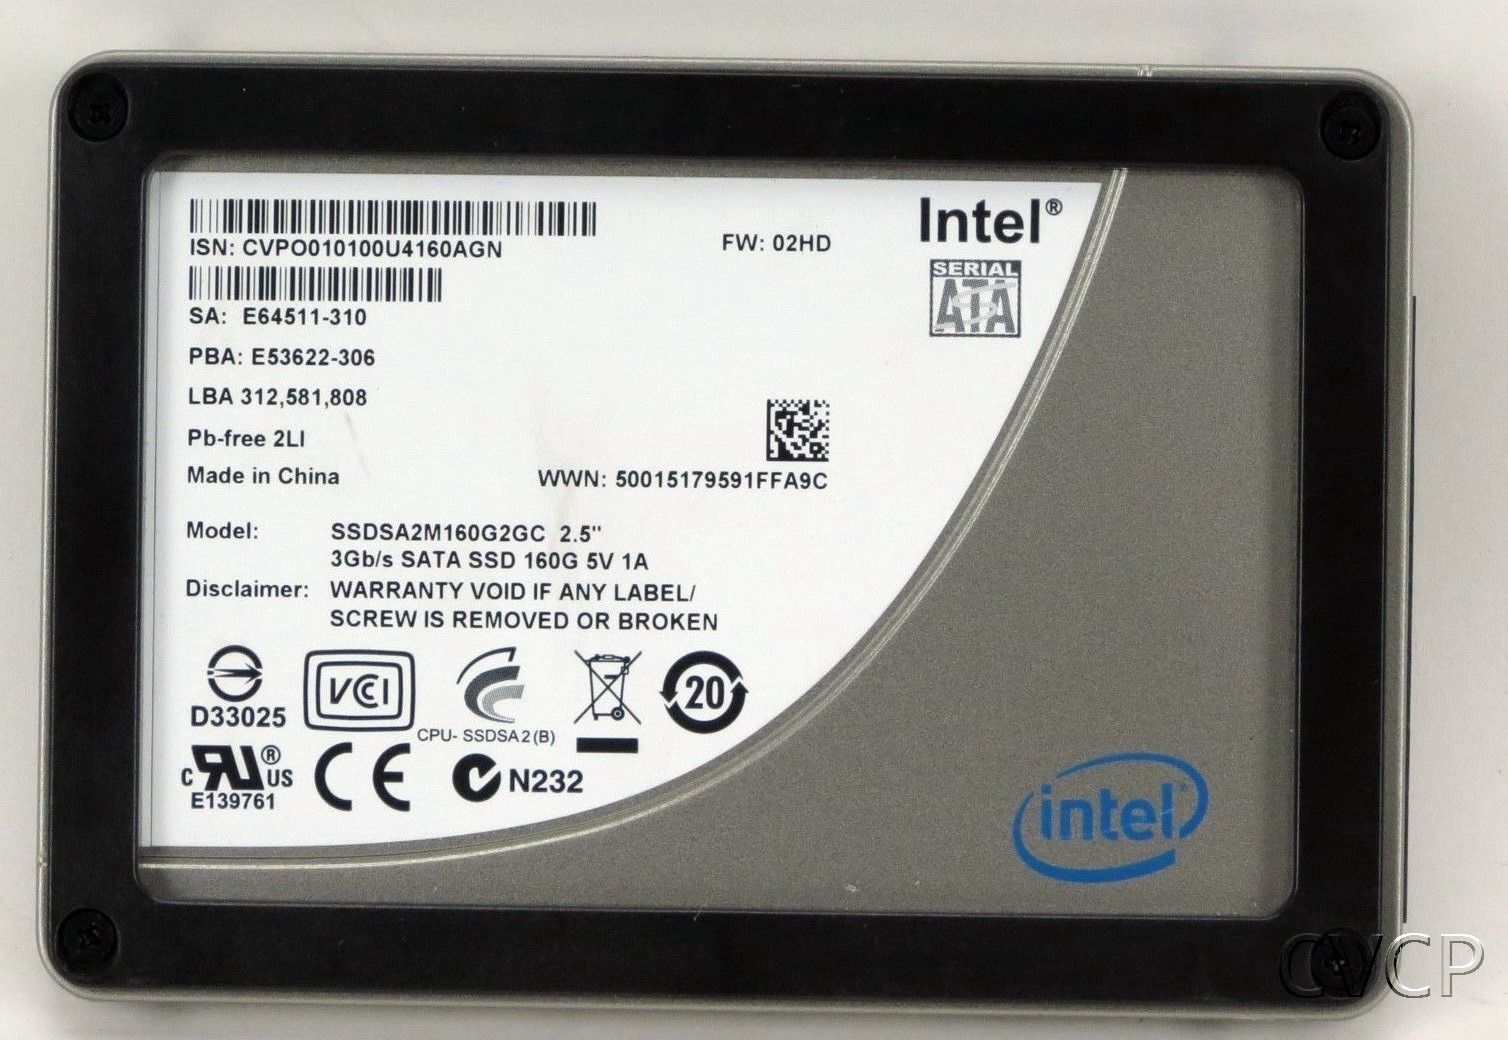 Intel X25-M 160 GB,Internal,2.5" (SSDSA2M160G2GC) (SSD) Solid State Drive